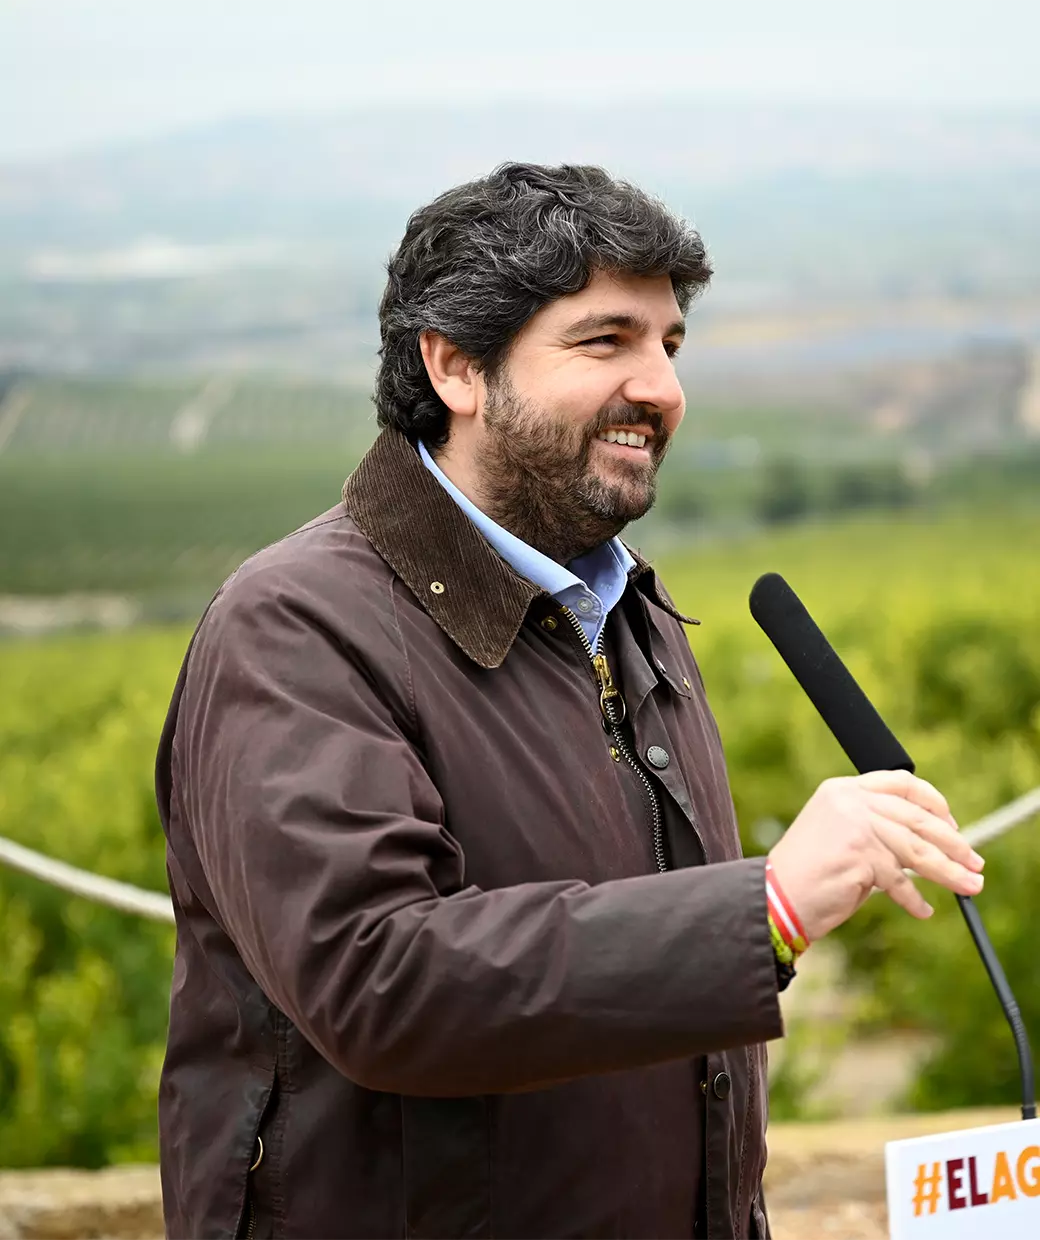 El presidente de la Comunidad Autónoma, Fernando López Miras, frente a un micrófono en un entorno natural